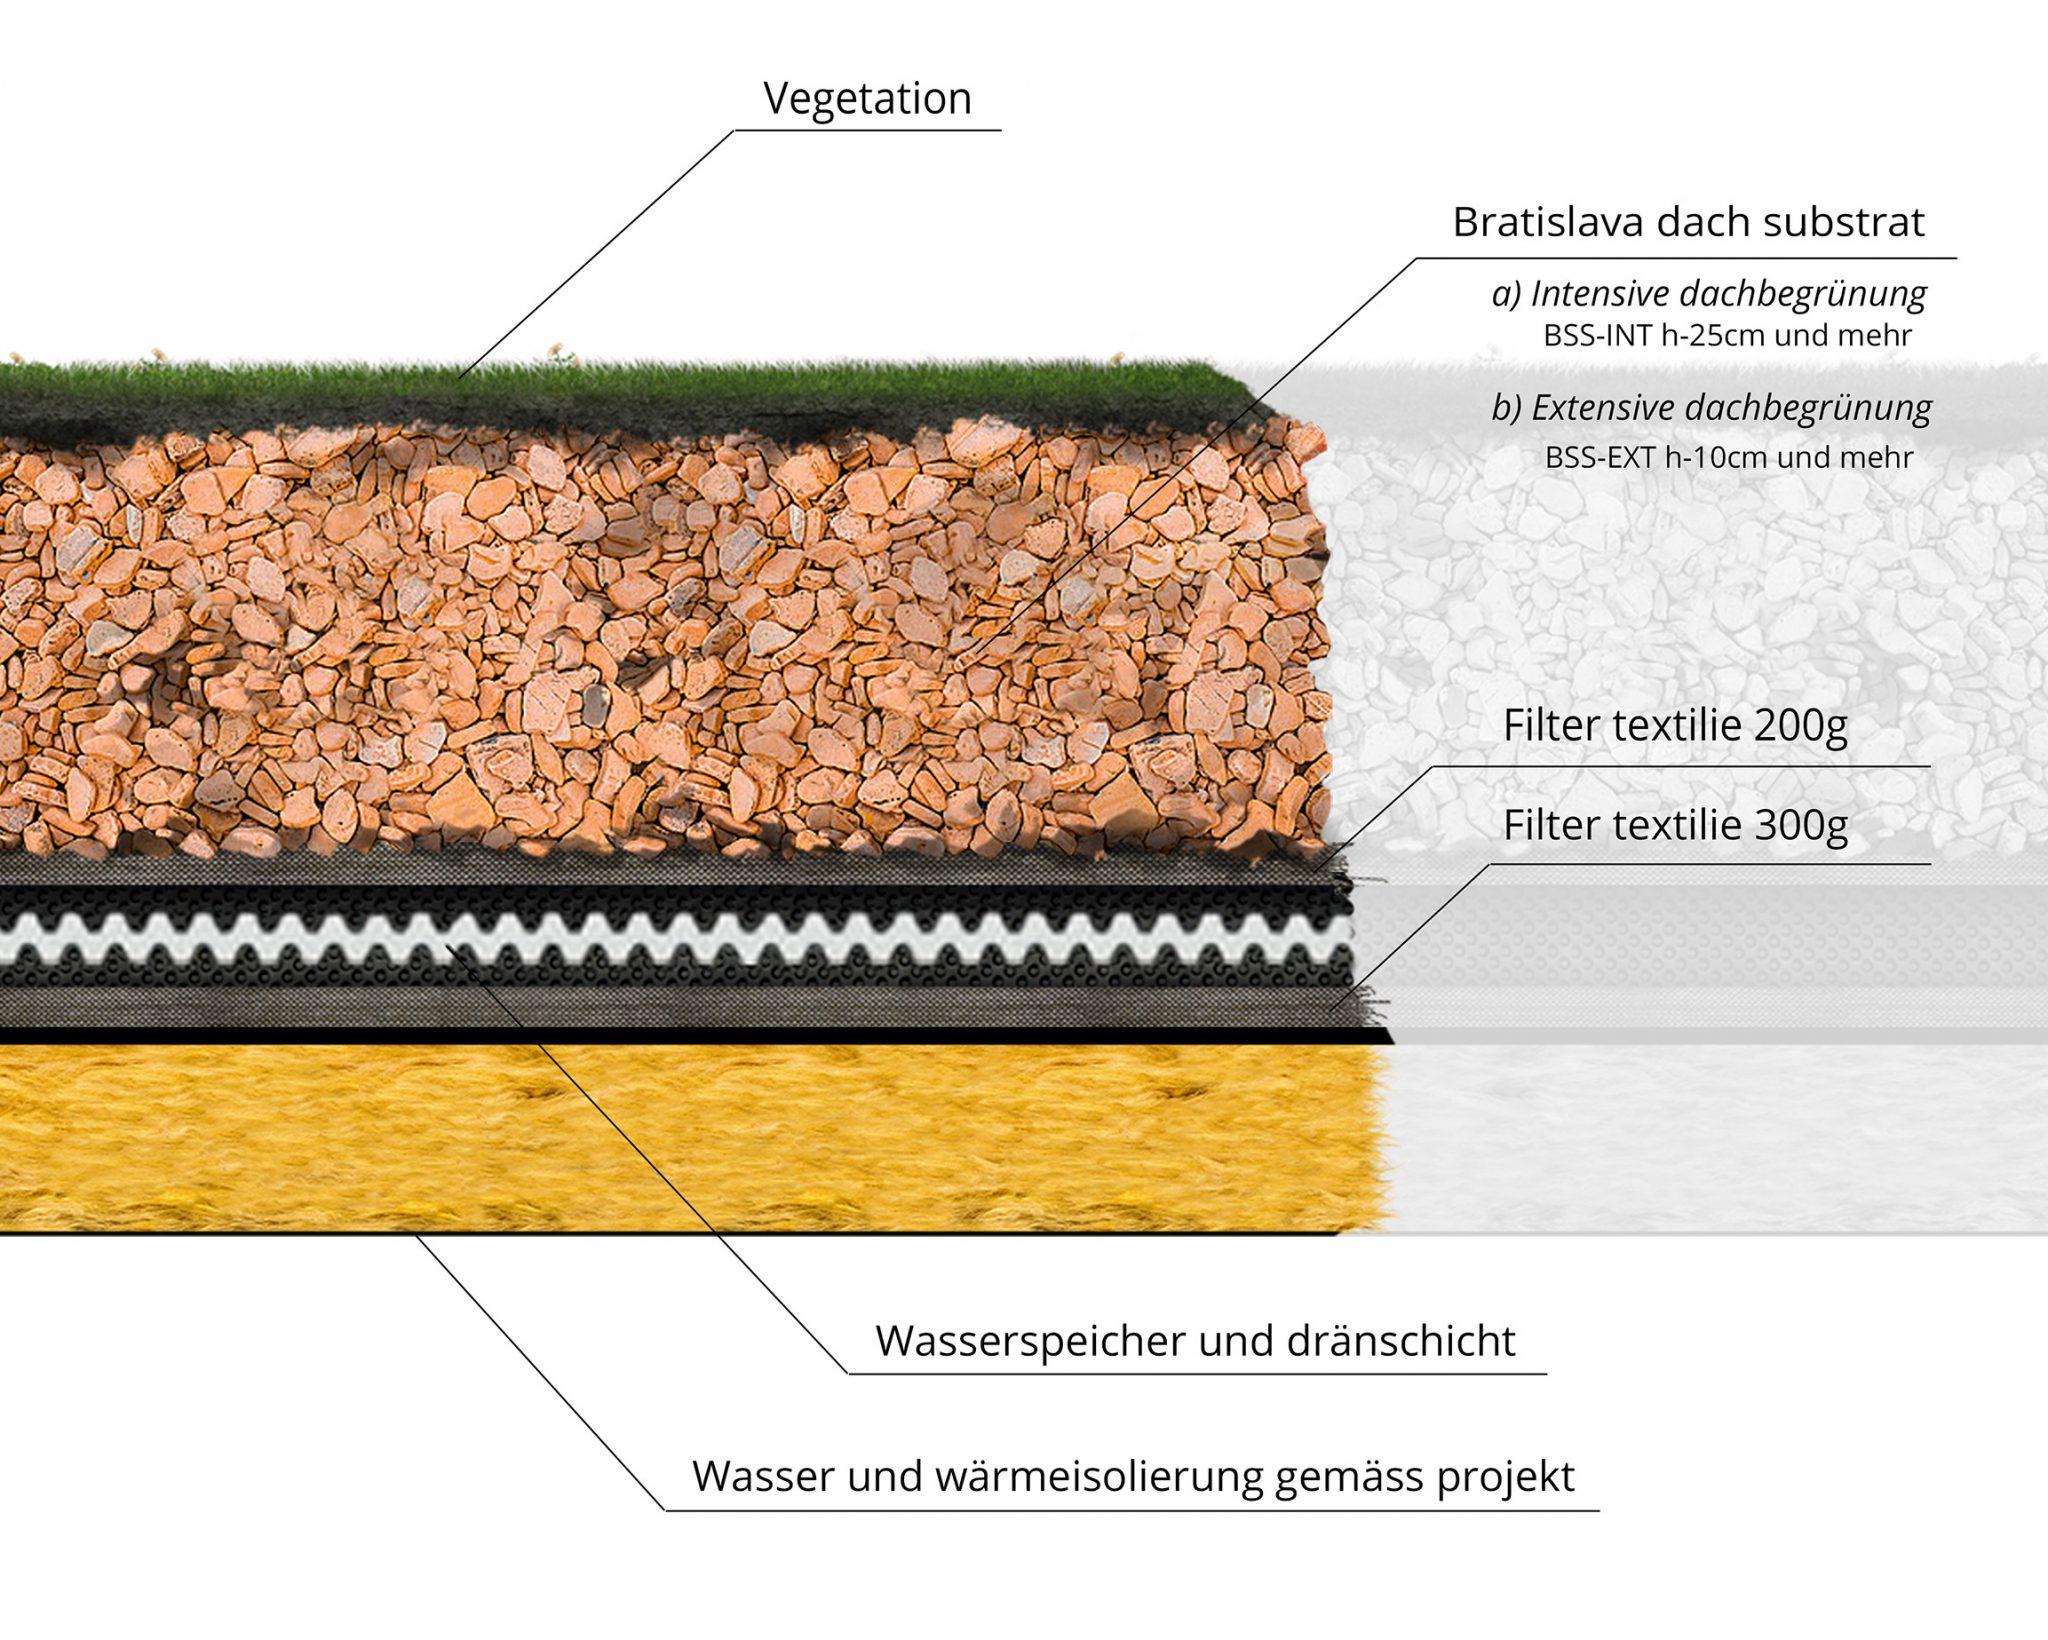 Vegetation | Bratislava dach substrat: a) Intensive dachbegrünung (BSS-INT h-25cm und mehr), b) Extensive dachbegrünung (BSS-EXT h-10cm und mehr) | Filter textilie 200g | Filter textilie 300g | Wasserspeicher und dränschicht, Wasser und wärmeisolierung gemäss projekt